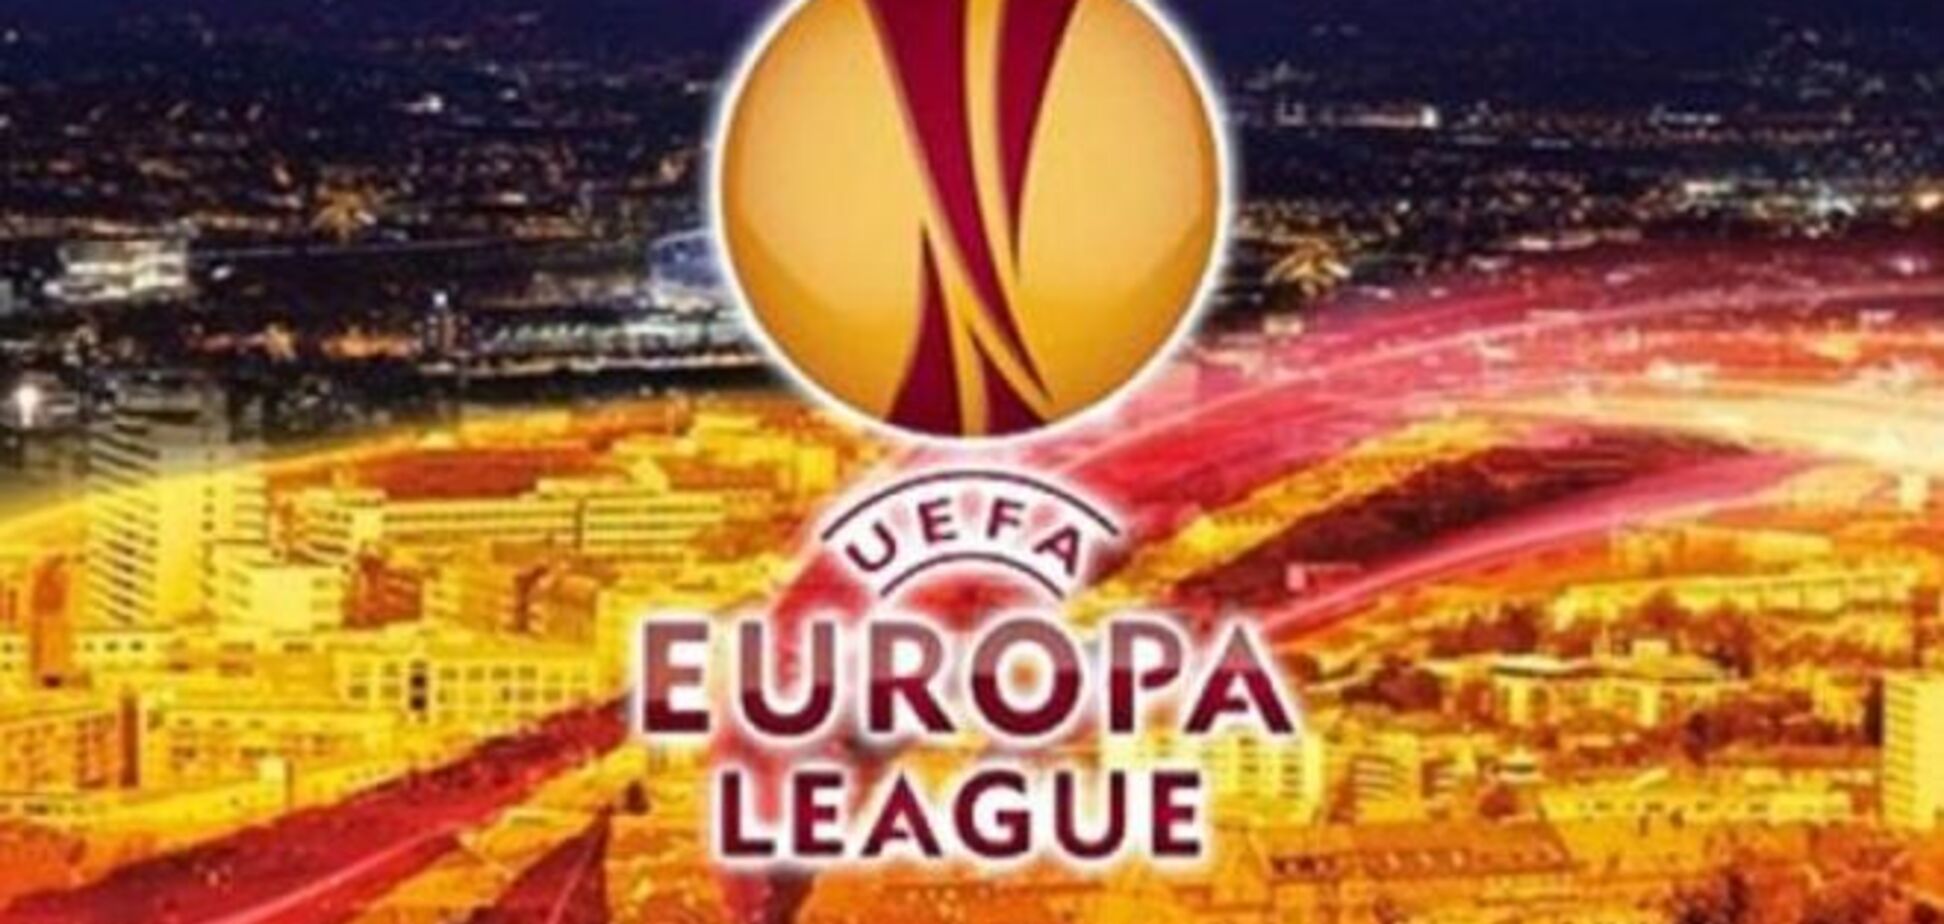 Футбольный вечер на 'Обозревателе': 'Динамо' и 'Днепр' сражаются в Лиге Европы